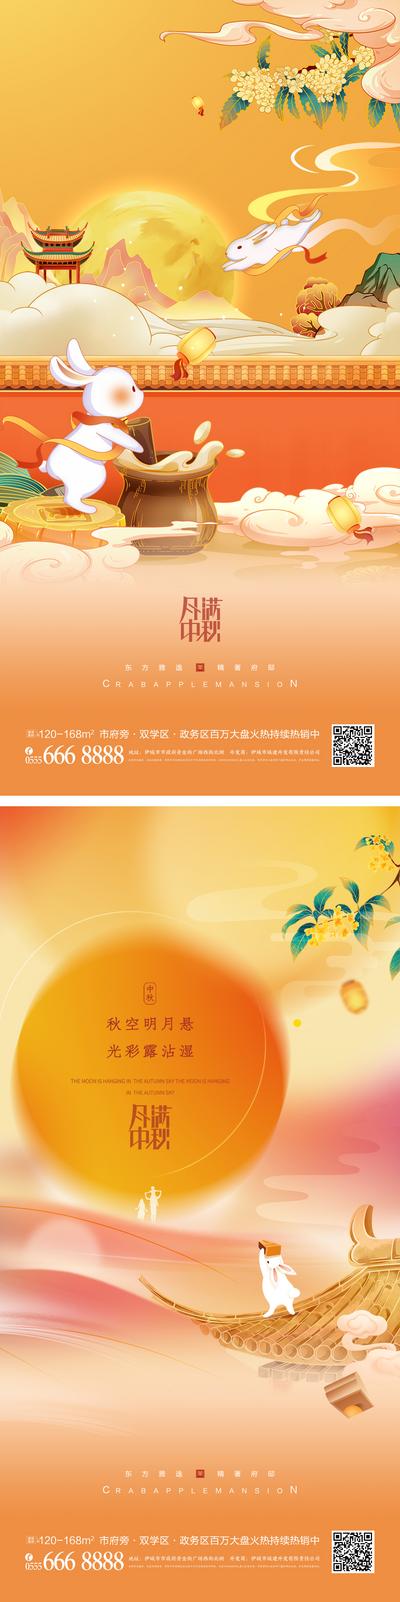 南门网 海报 房地产 中国传统节日 中秋节 系列 月饼 兔子 插画 国潮